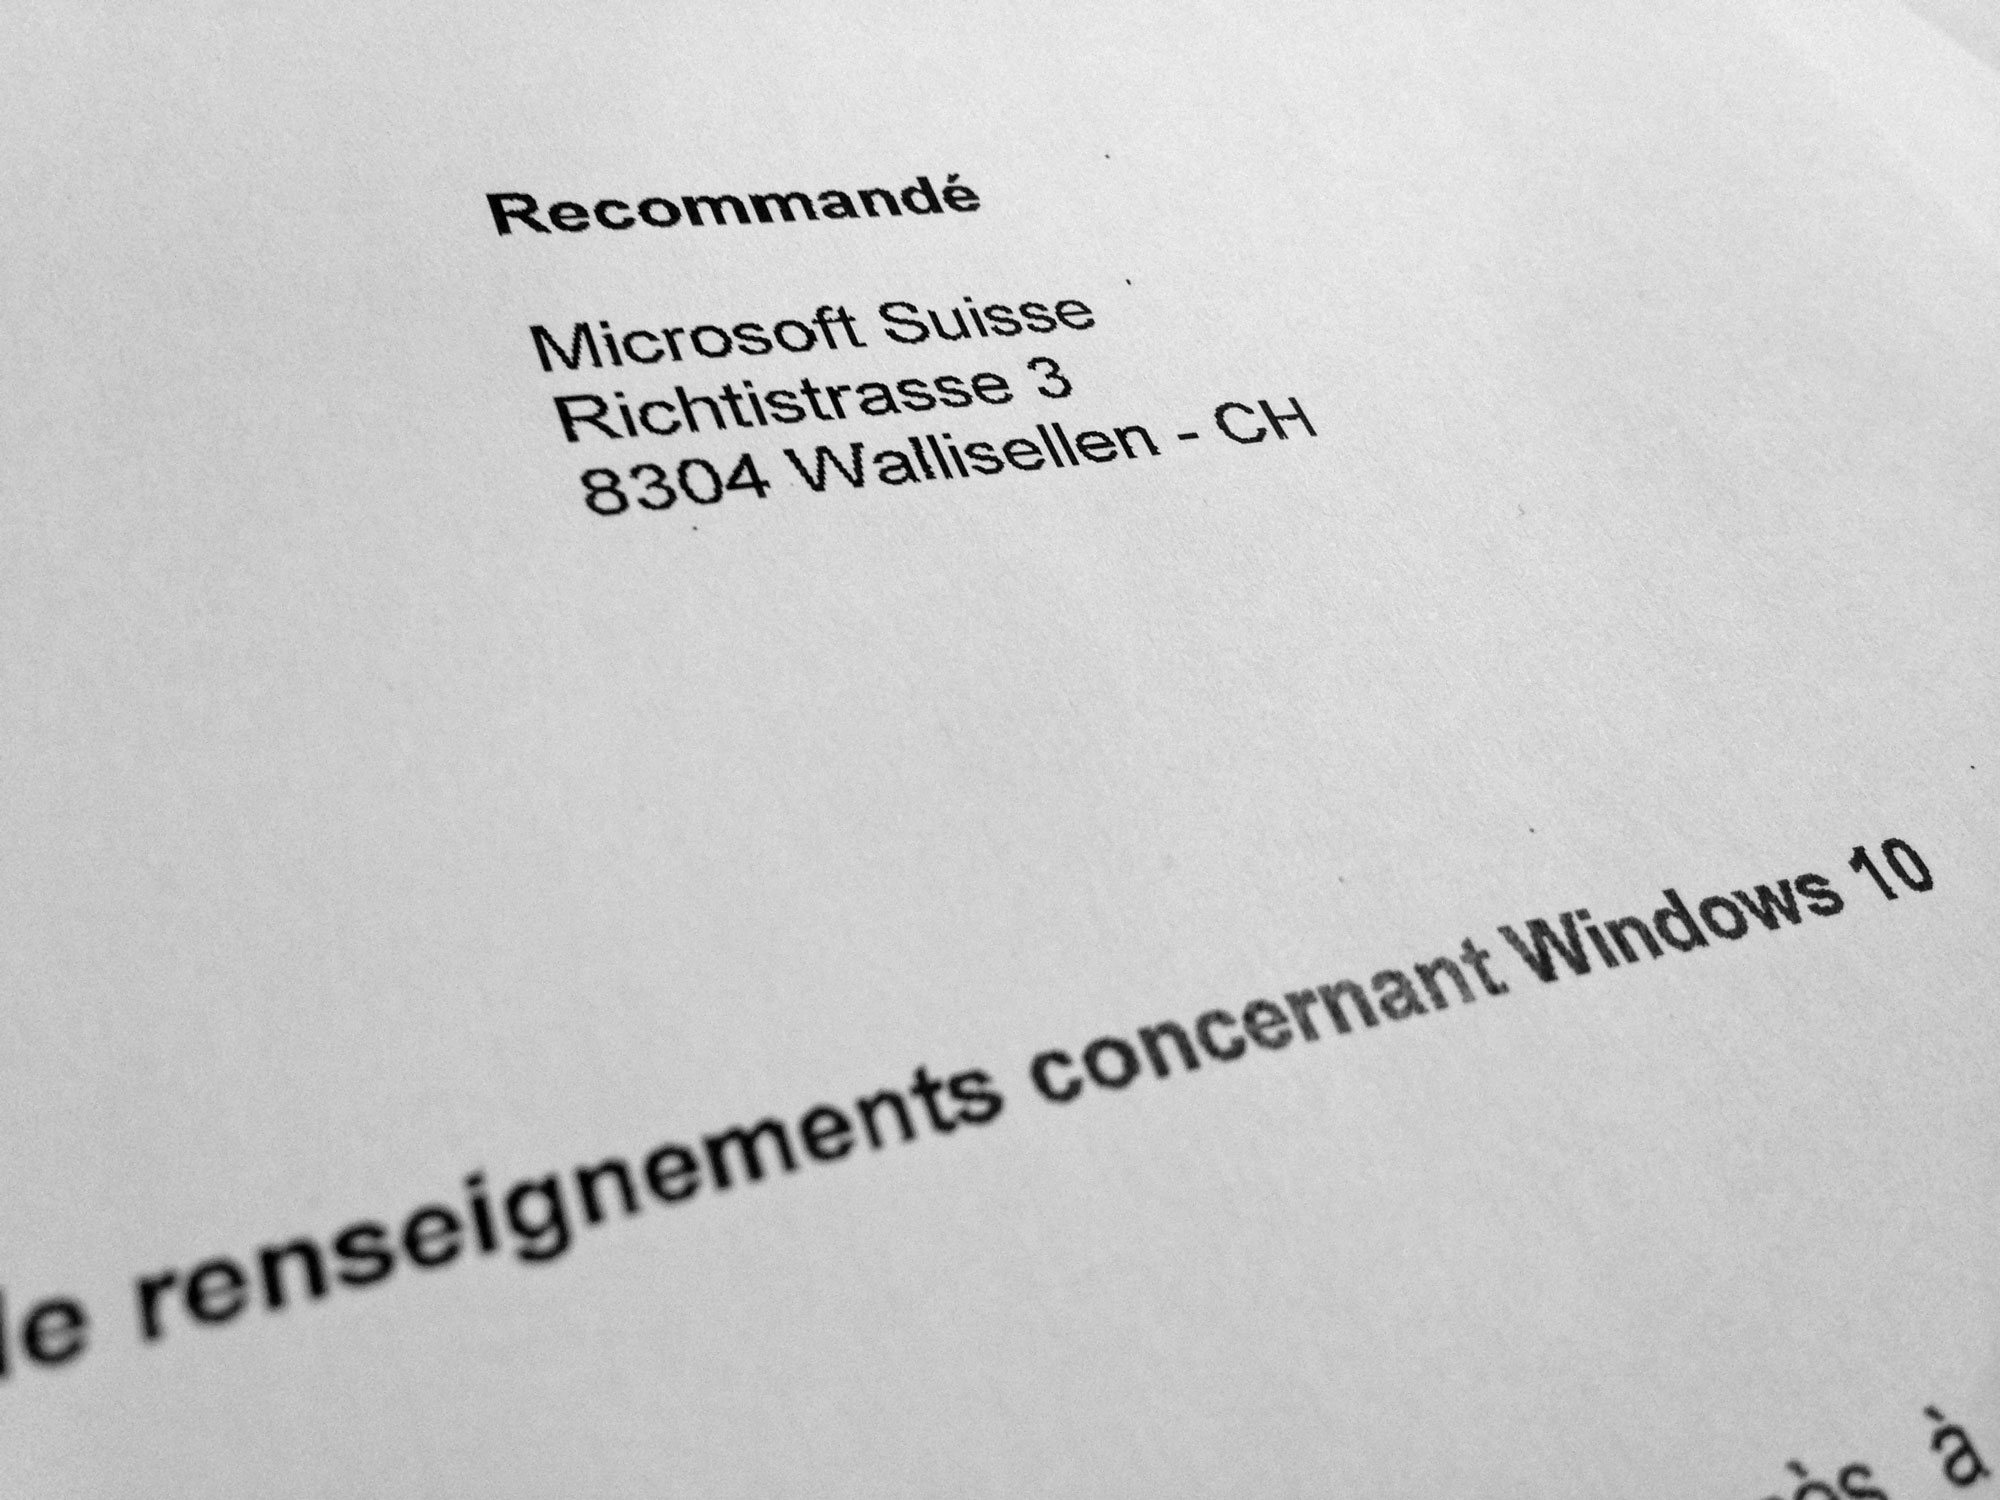 Le recommandé envoyé à Microsoft Suisse.